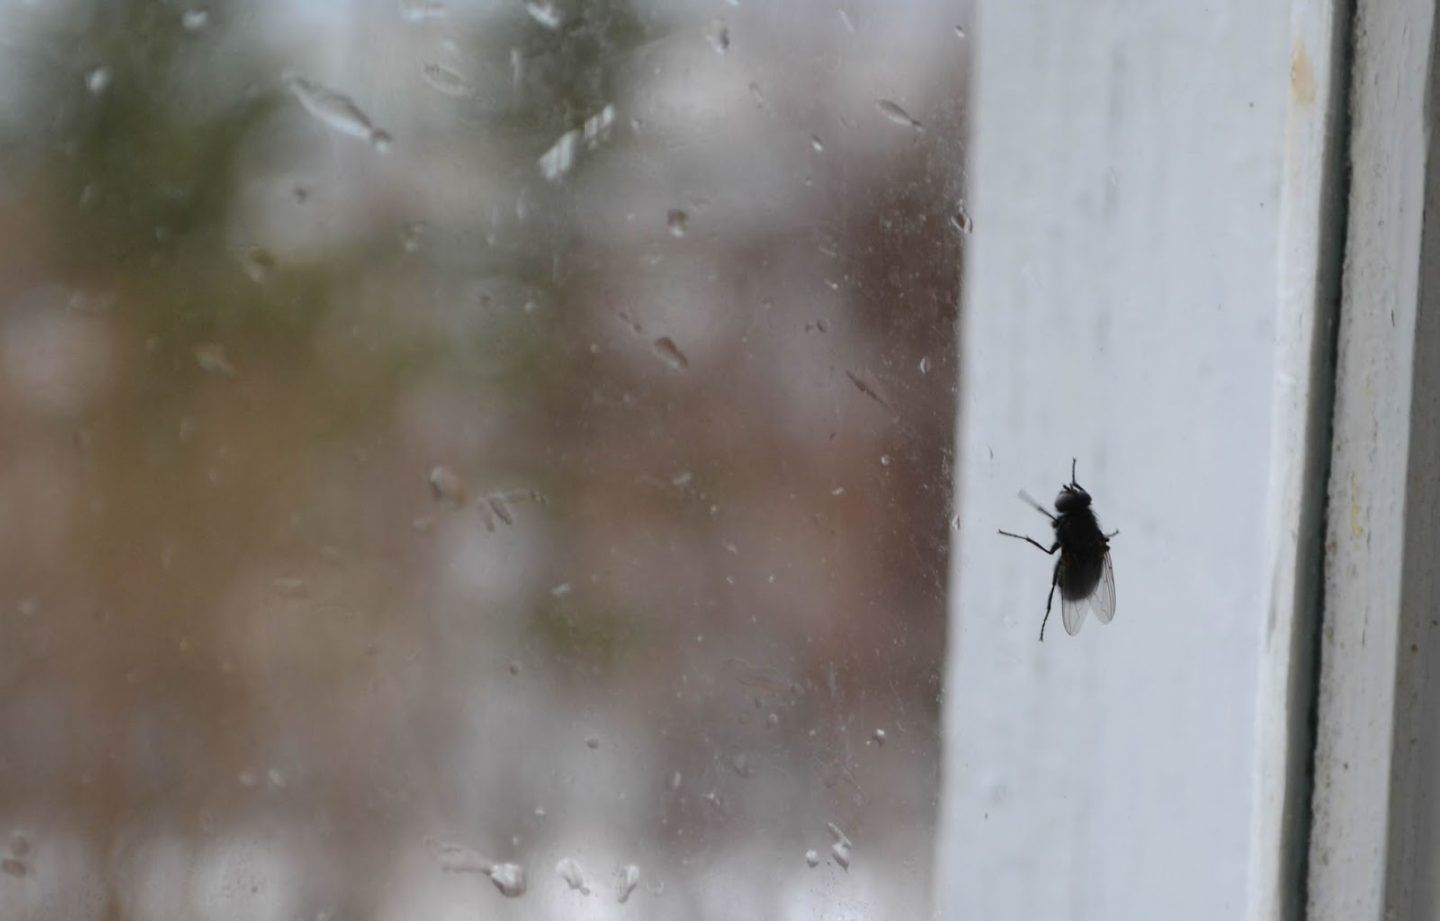 كيف يسير الذباب تسير الحشرات على الأسقف والجدران والنوافذ دون أن تنزلق؟